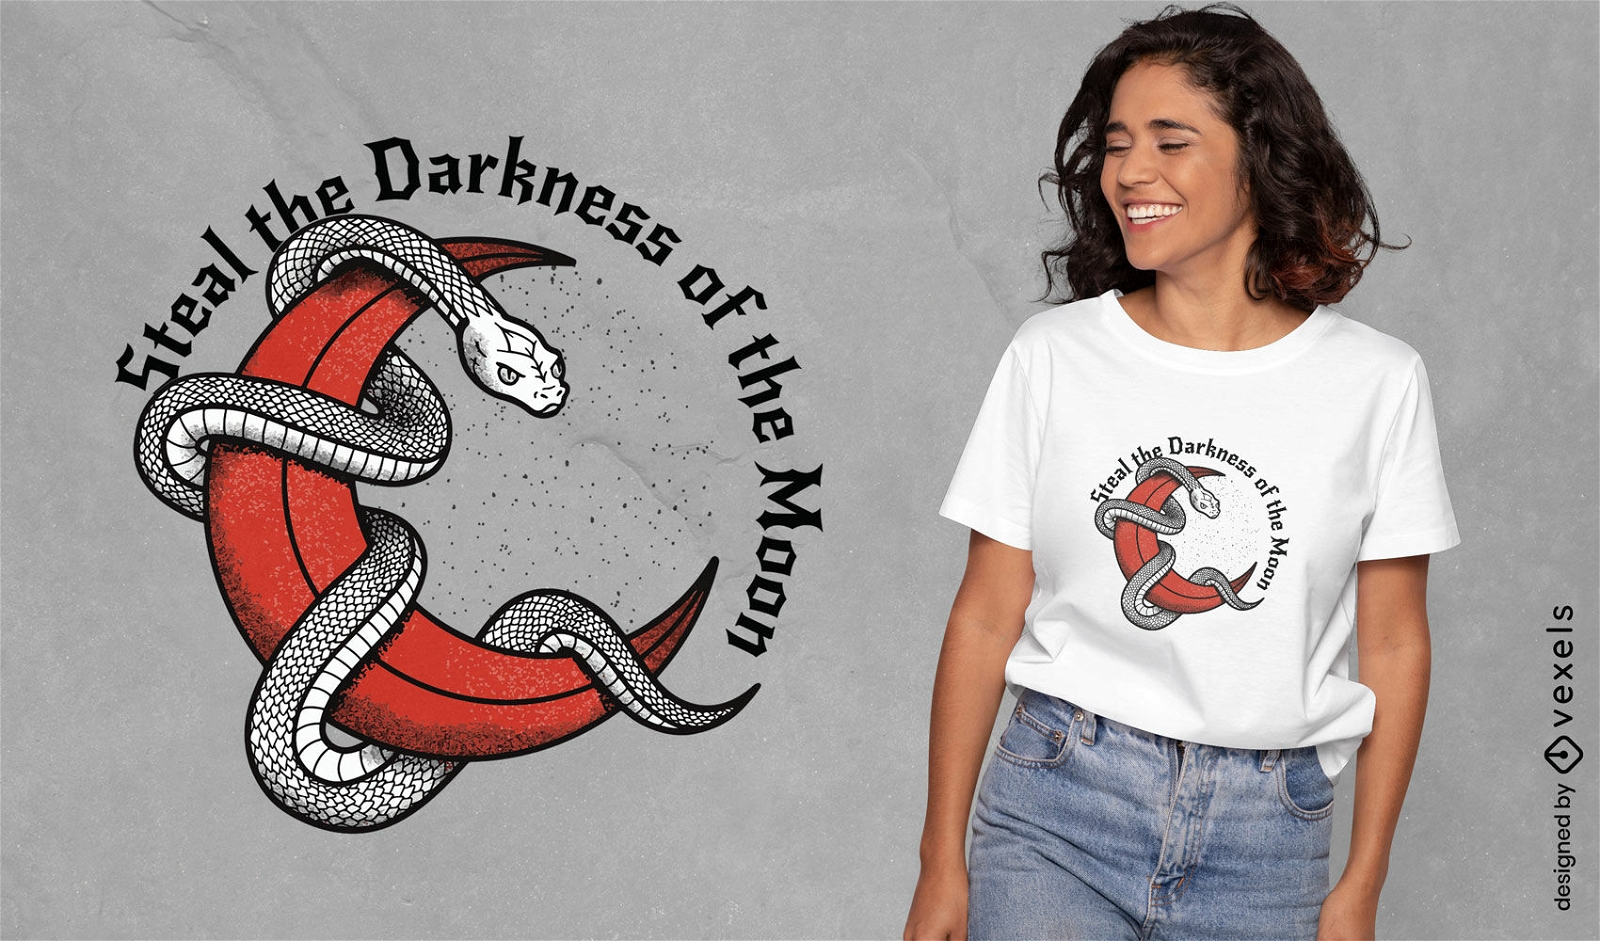 Serpent moon mystery t-shirt design